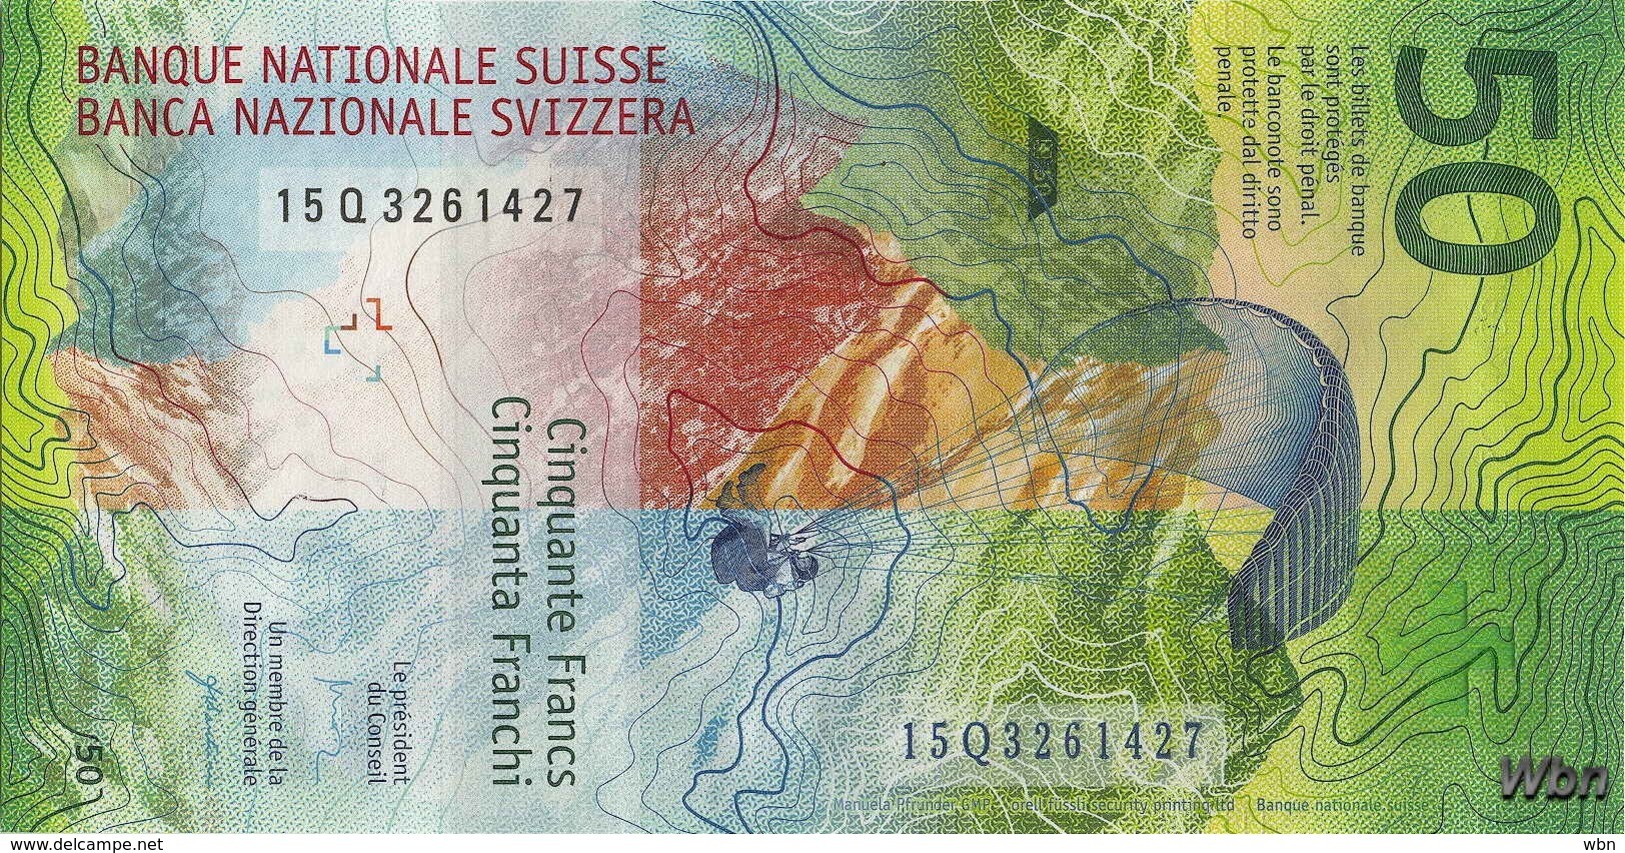 Suisse 50 Francs (P77) 2015b (Pref: Q) -UNC- - Suisse